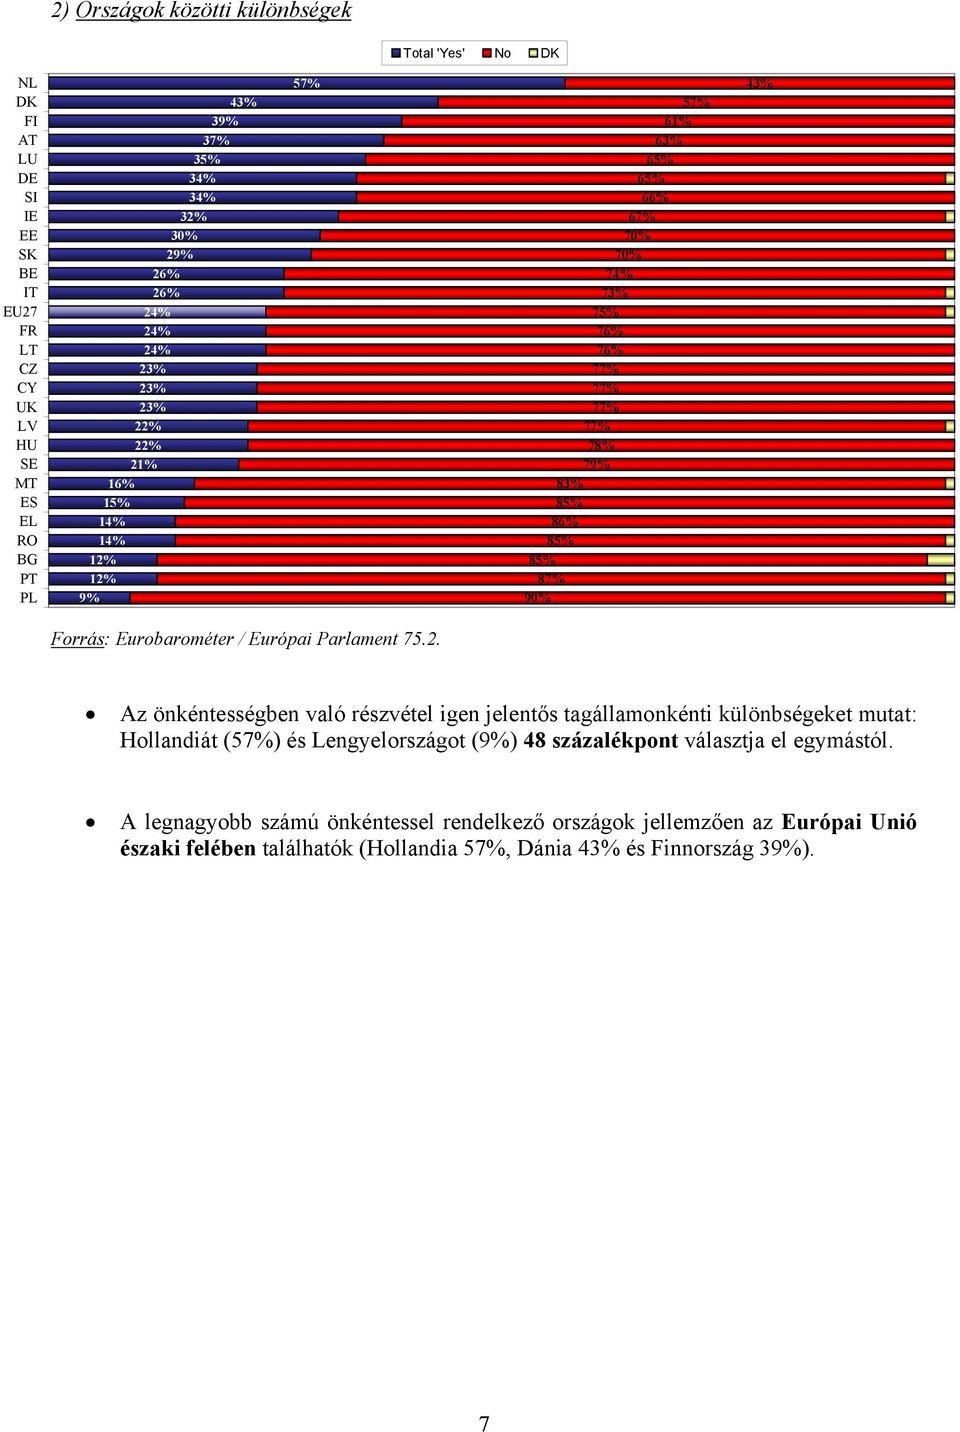 Eurobarométer / Európai Parlament Az önkéntességben való részvétel igen jelentős tagállamonkénti különbségeket mutat: Hollandiát (5) és Lengyelországot (9%) 48